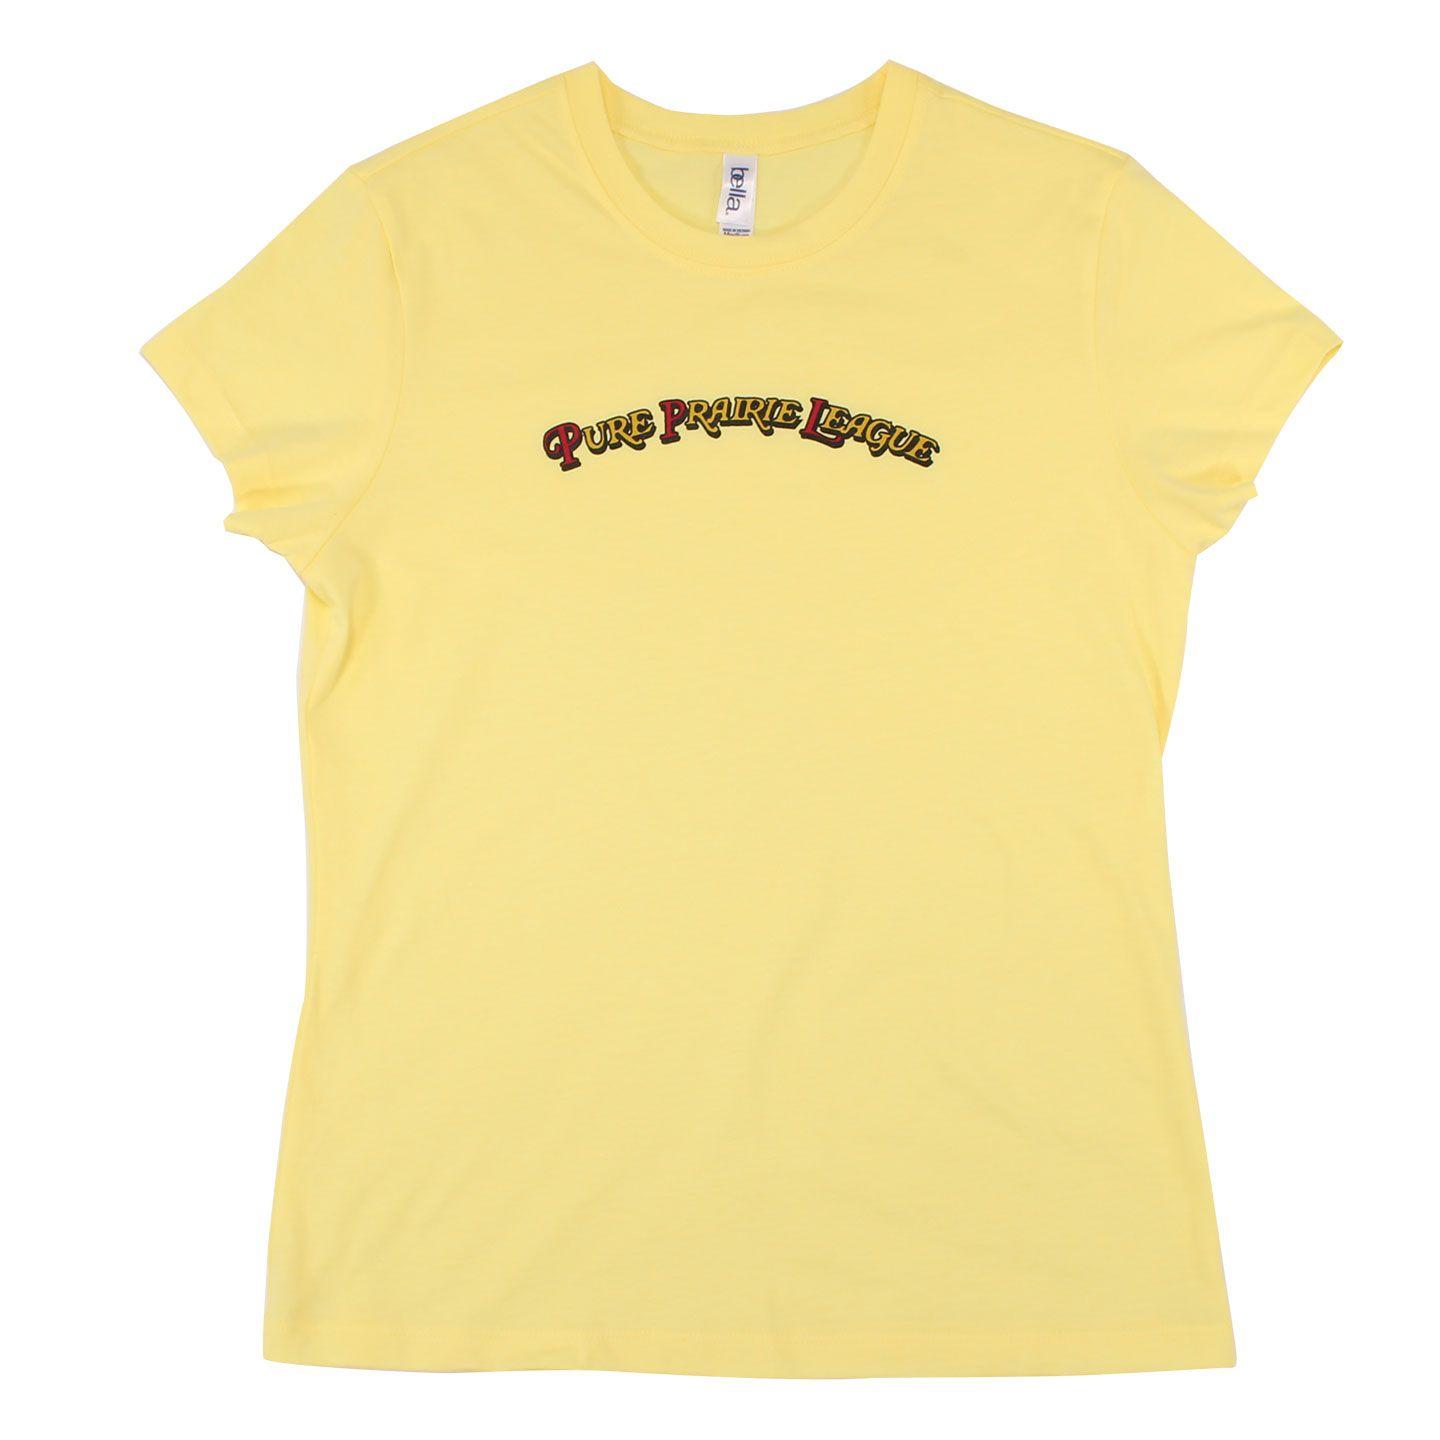 PPL Logo - Ladies Yellow PPL Logo T Shirt. Pure Prairie League